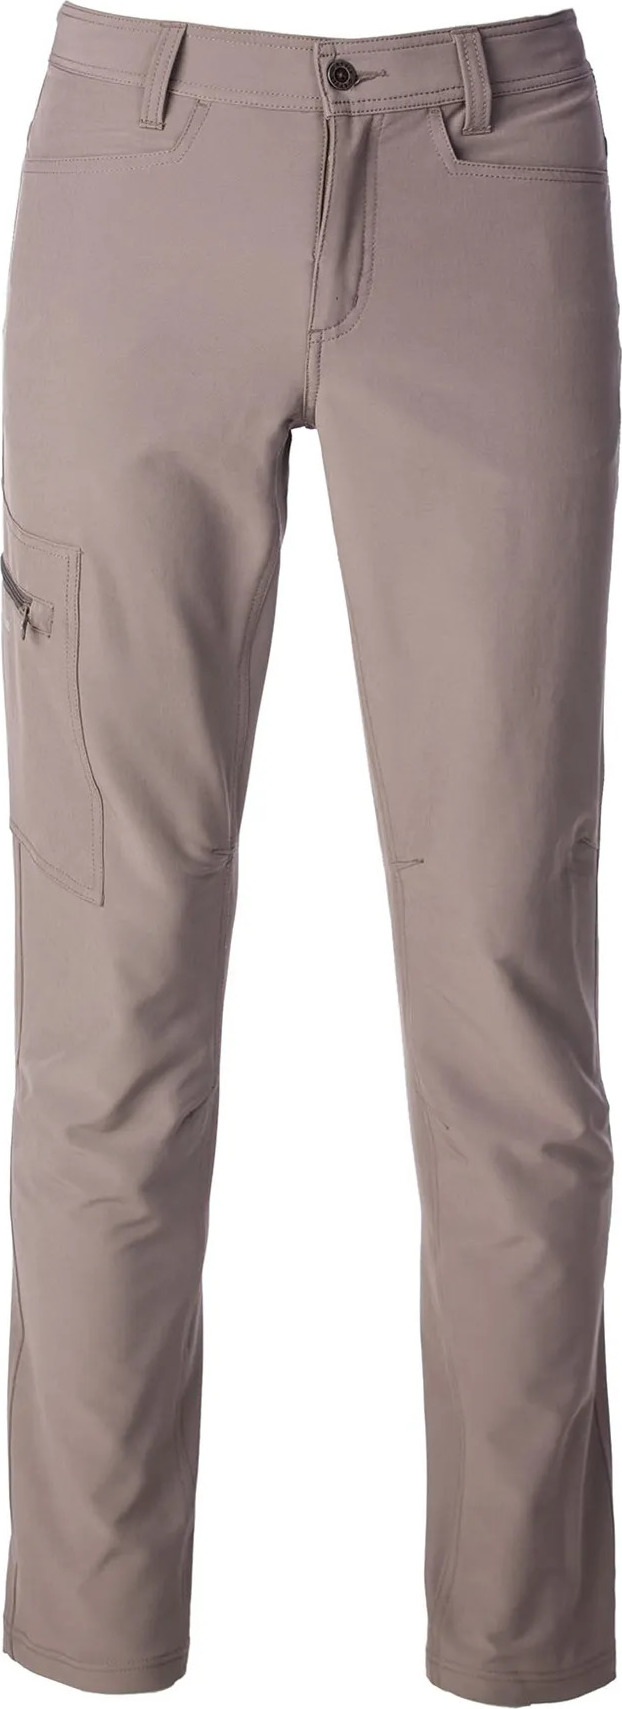 Pánské outdoorové kalhoty O'STYLE Perry khaki Velikost: 16/S